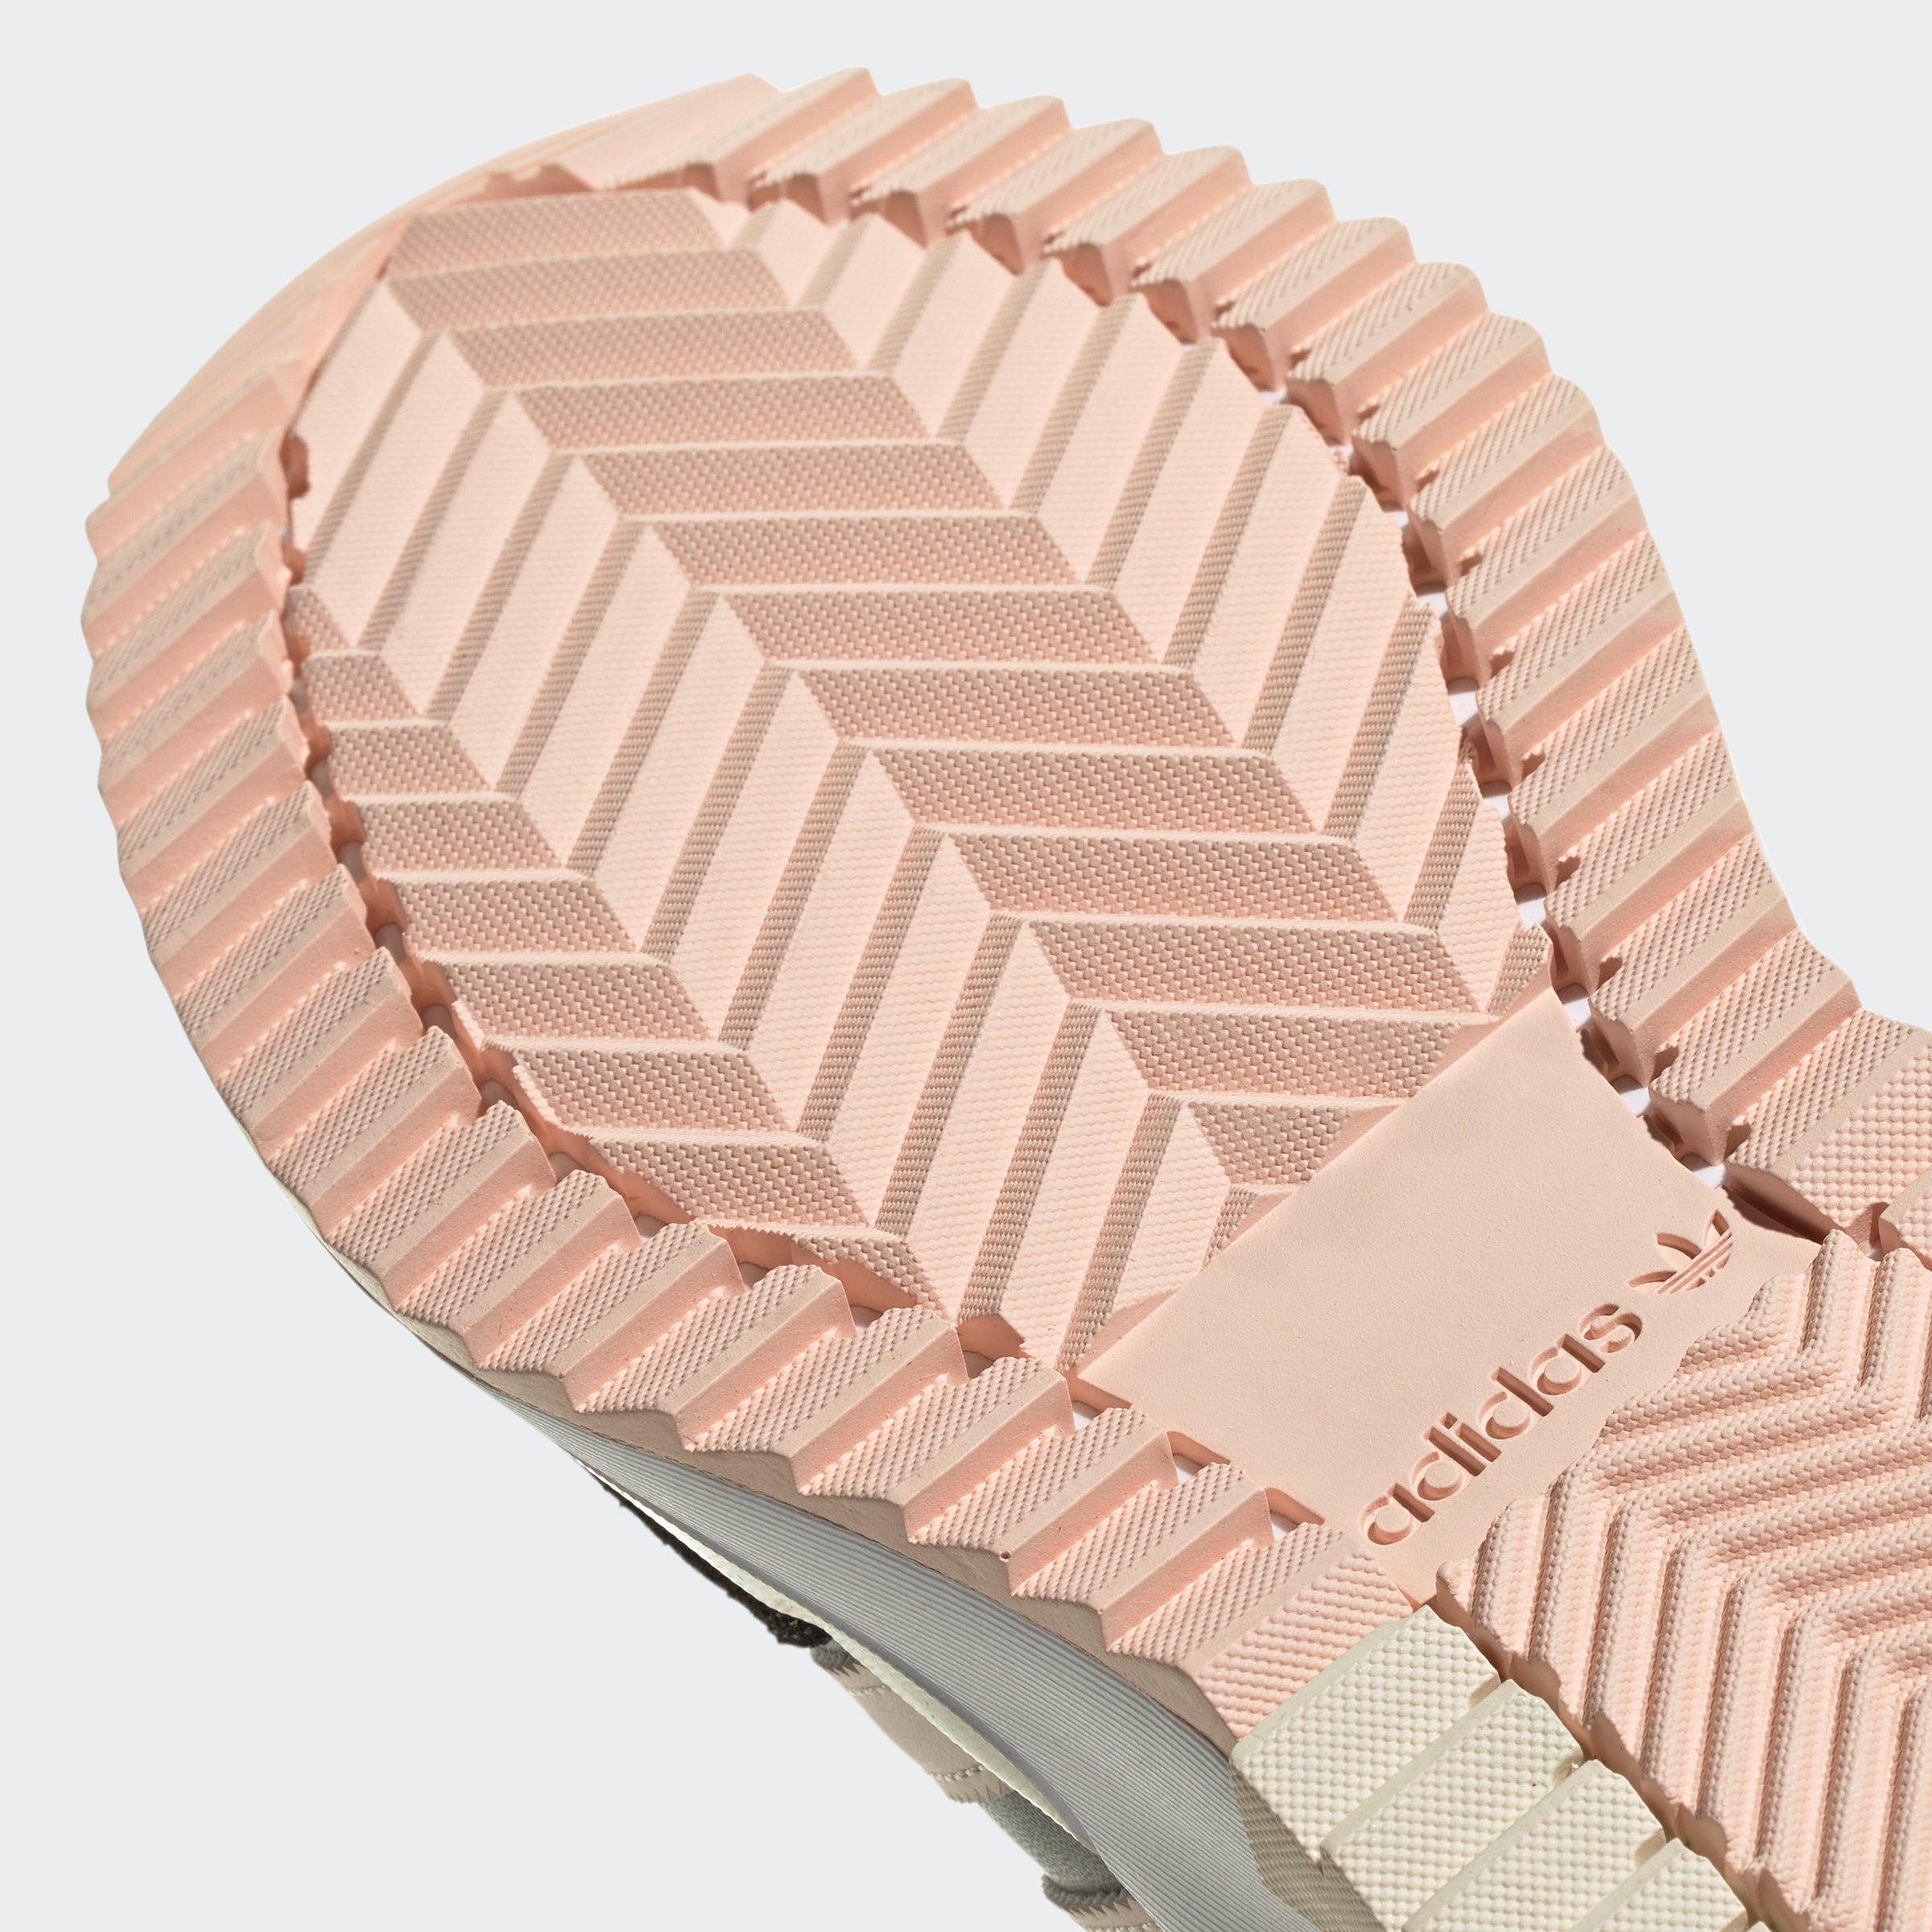 adidas Originals F2 / Wonder Five Carbon Sneaker Quartz RETROPY Grey /